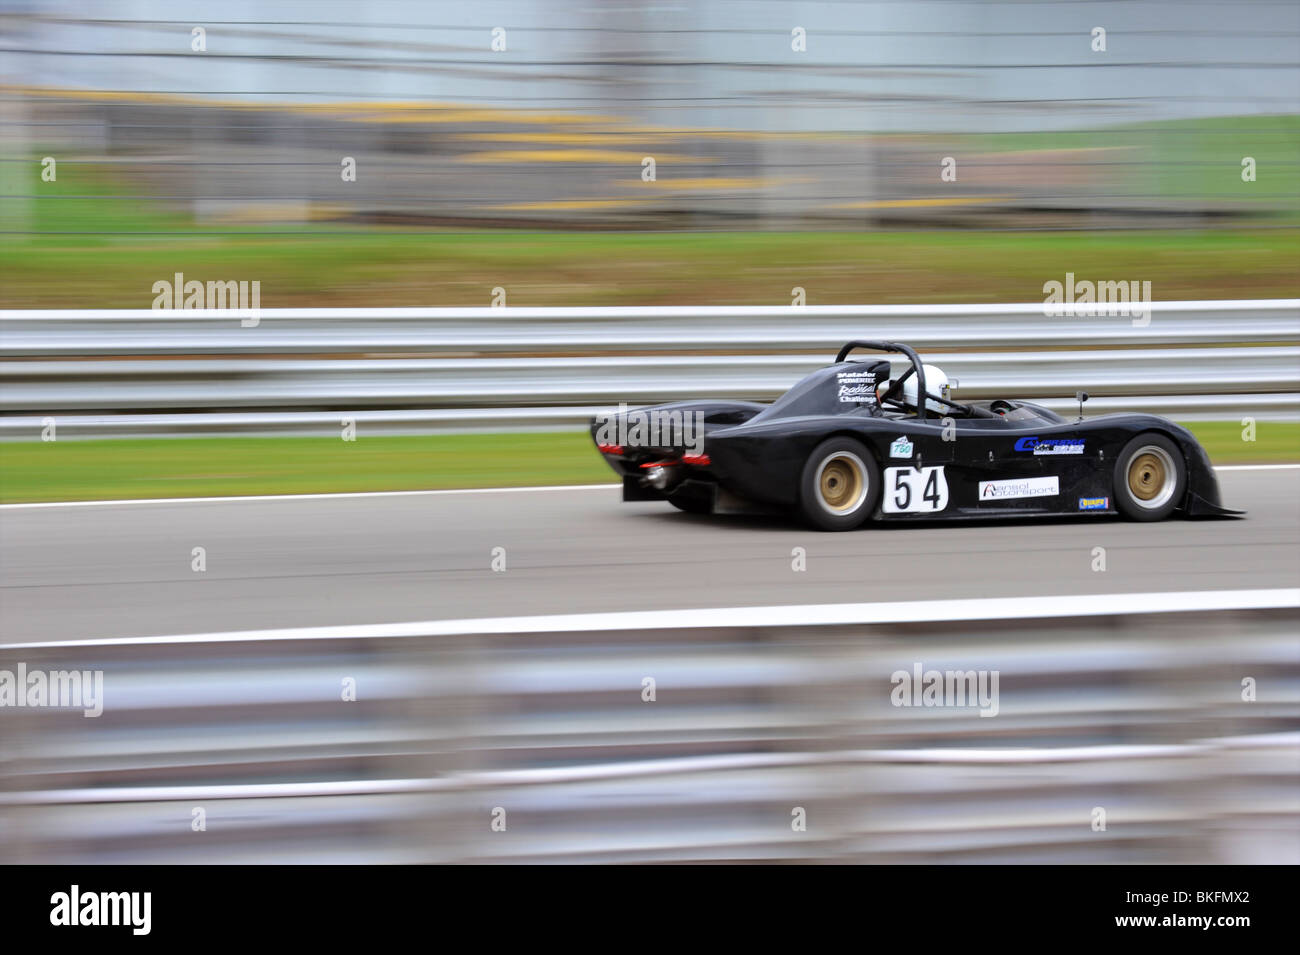 racing car Stock Photo